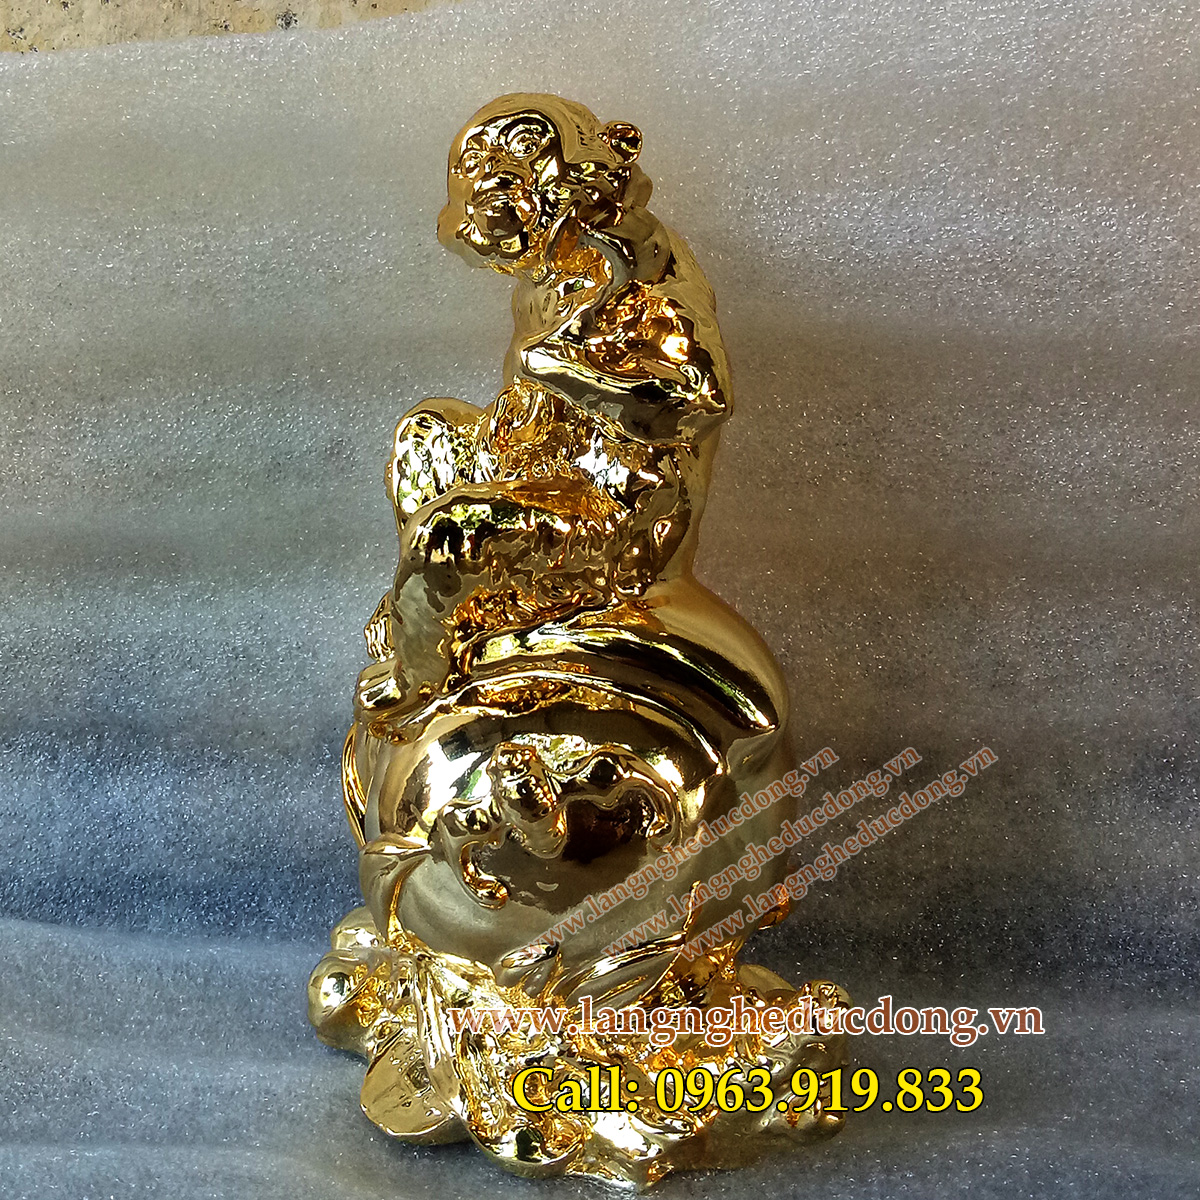 langngheducdong.vn - tượng phong thủy, tượng khỉ đồng dát vàng, tượng phong thủy dát vàng